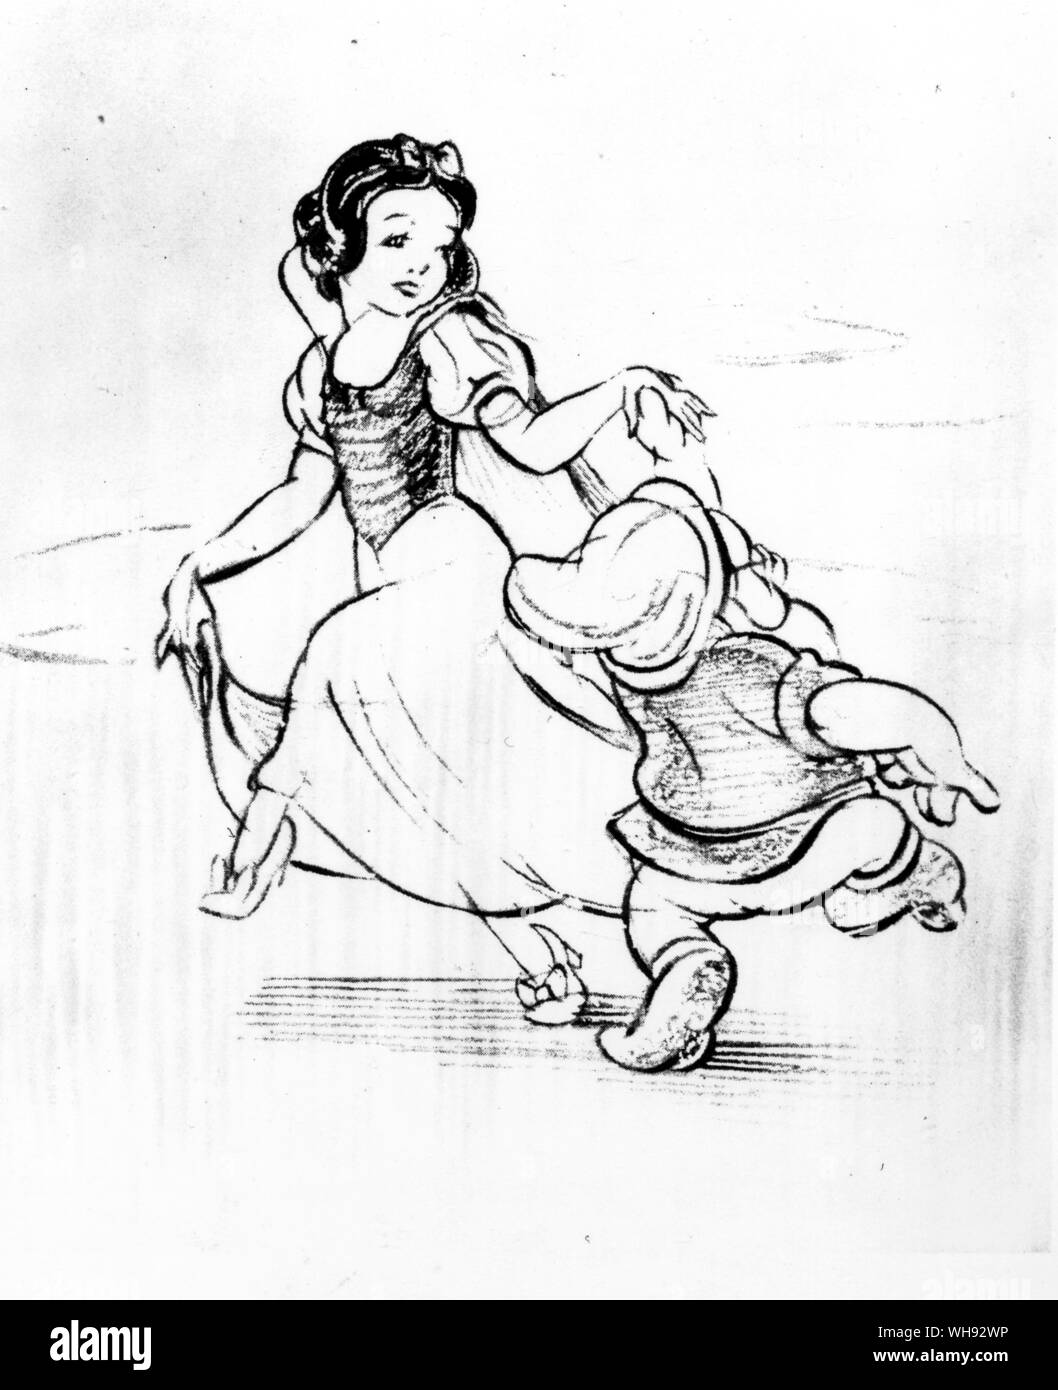 Blanche Neige et les Sept Nains. Guide des dessins de Walt Disney pour le film, Blanche Neige et les Sept Nains, 1938. Blanche Neige danse avec mauvaise humeur. Banque D'Images